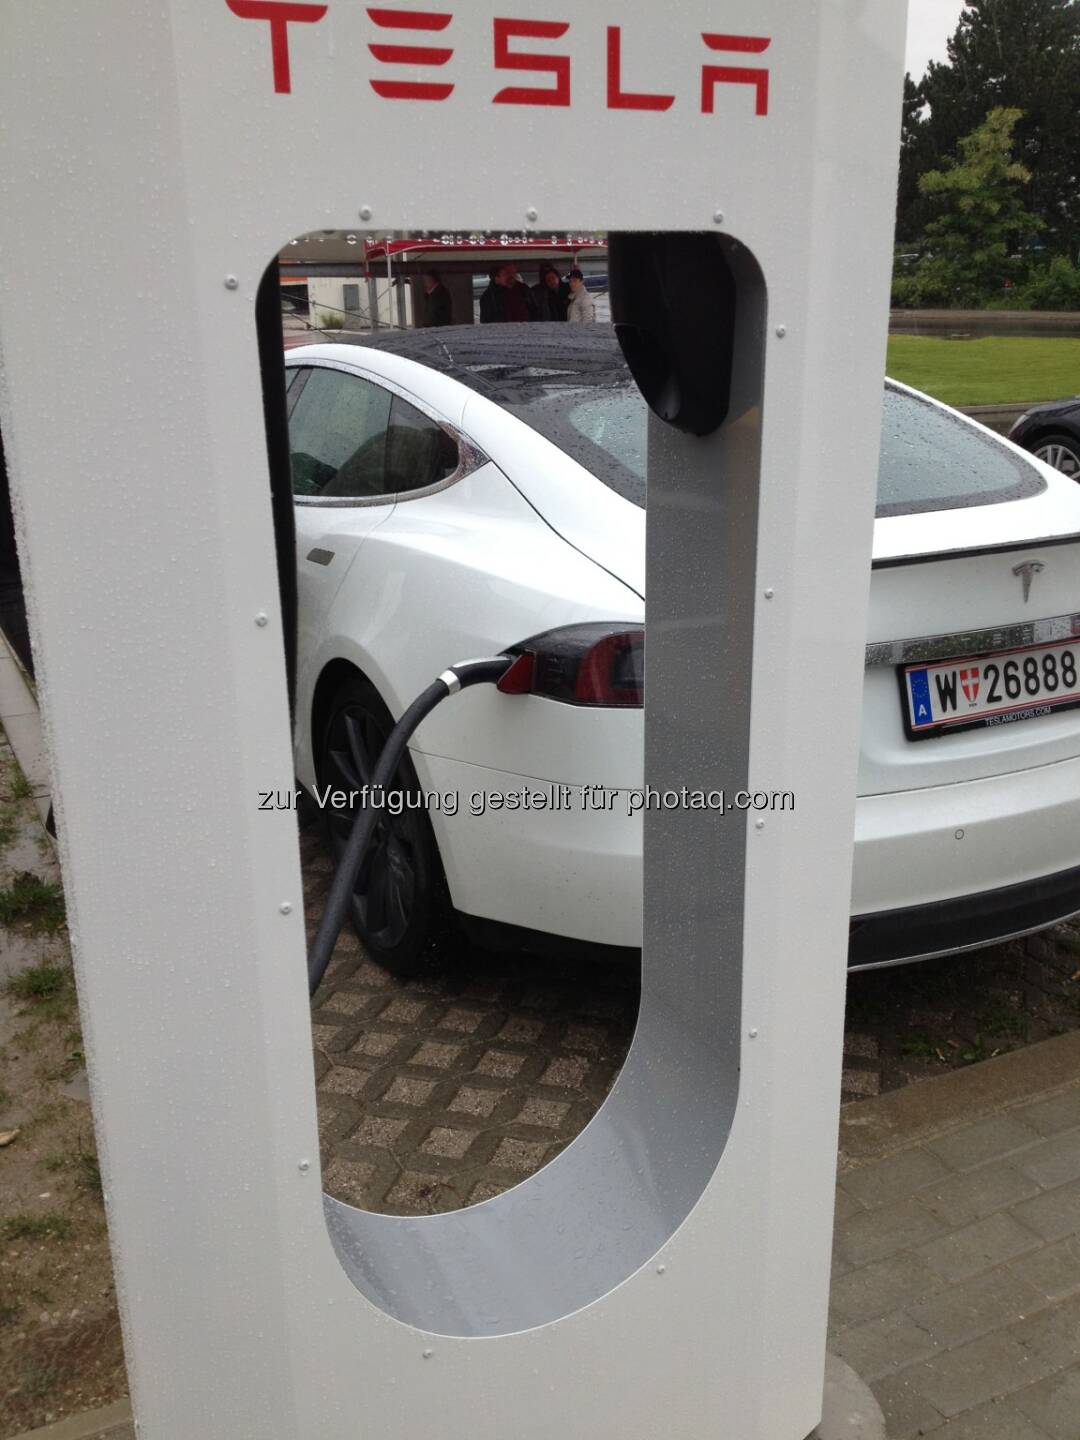 Tesla Motors GmbH: Tesla eröffnet ersten Supercharger in Wien (Bild: Tesla Motors)